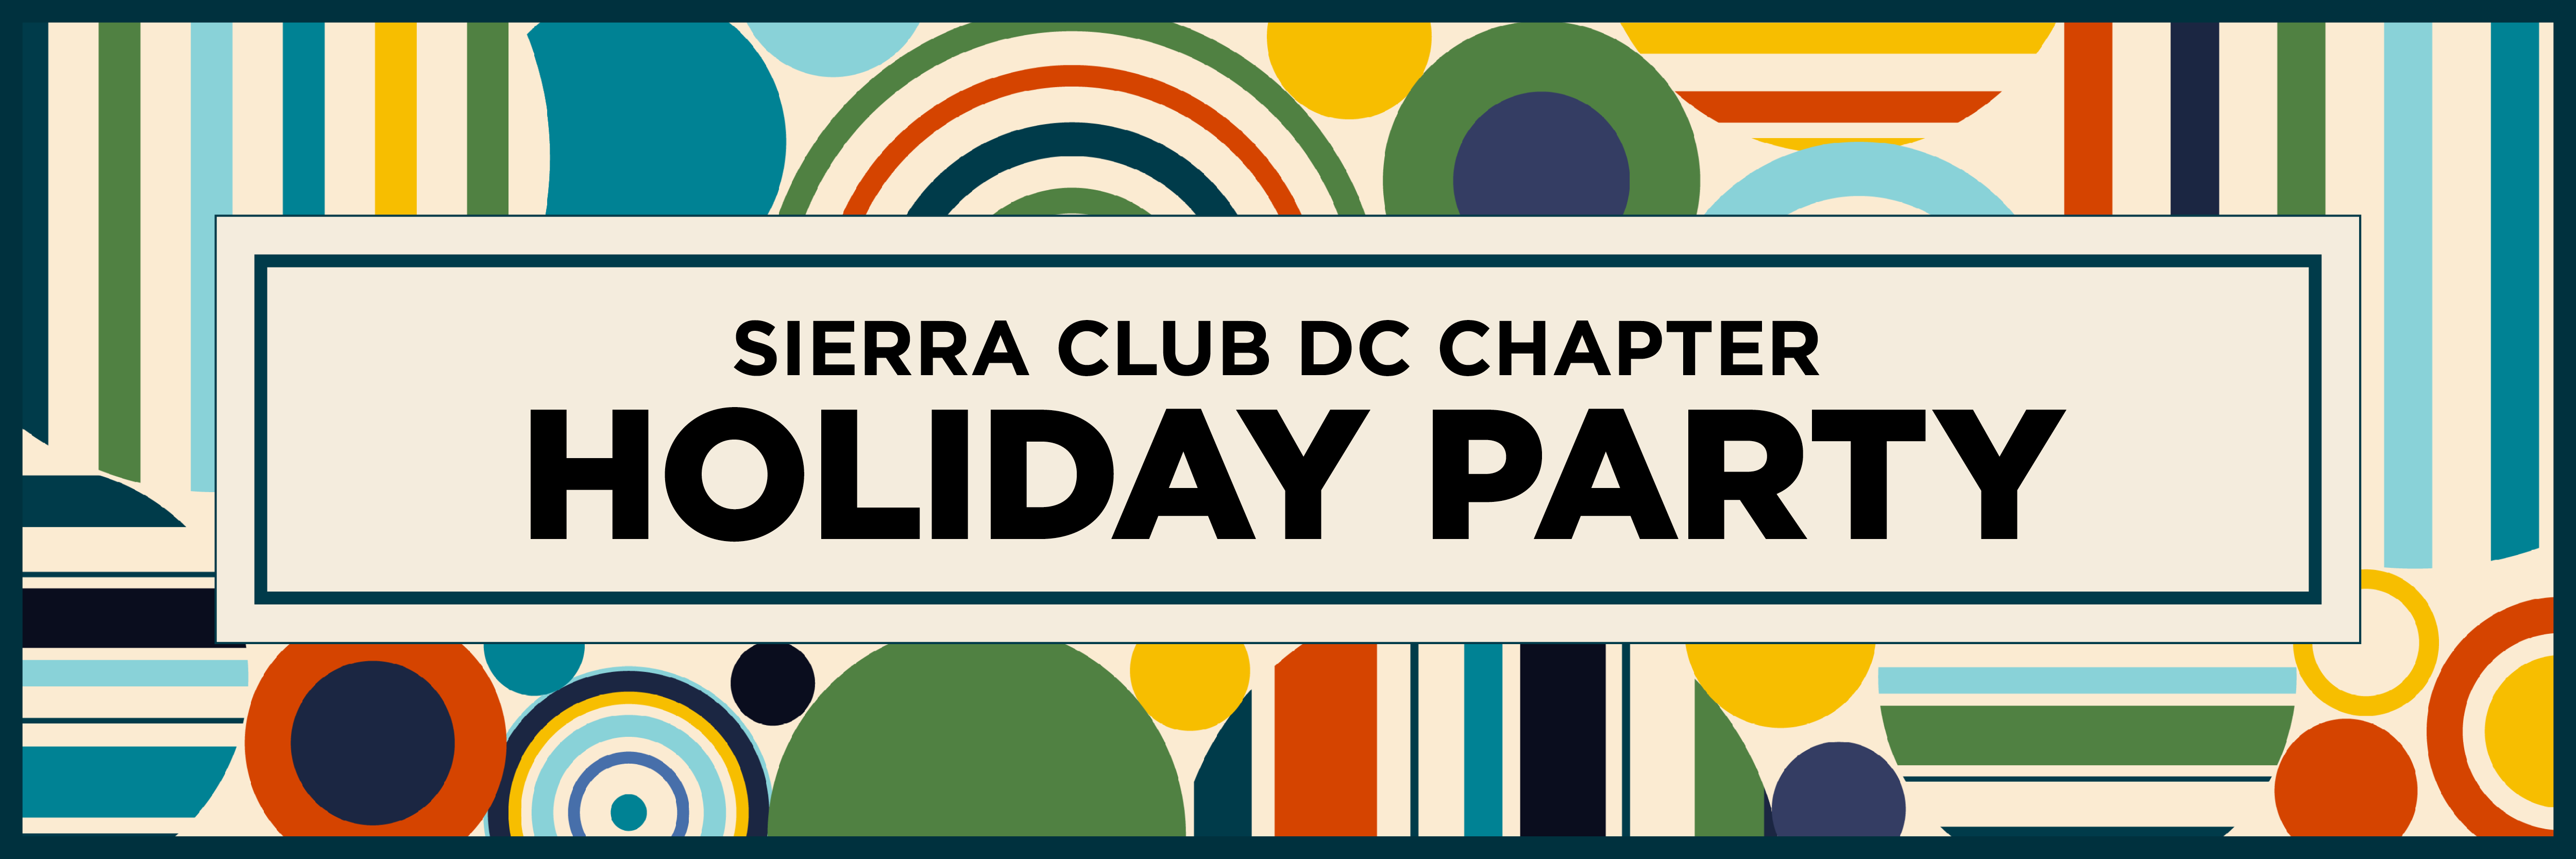 Sierra Club Holiday Party 2020